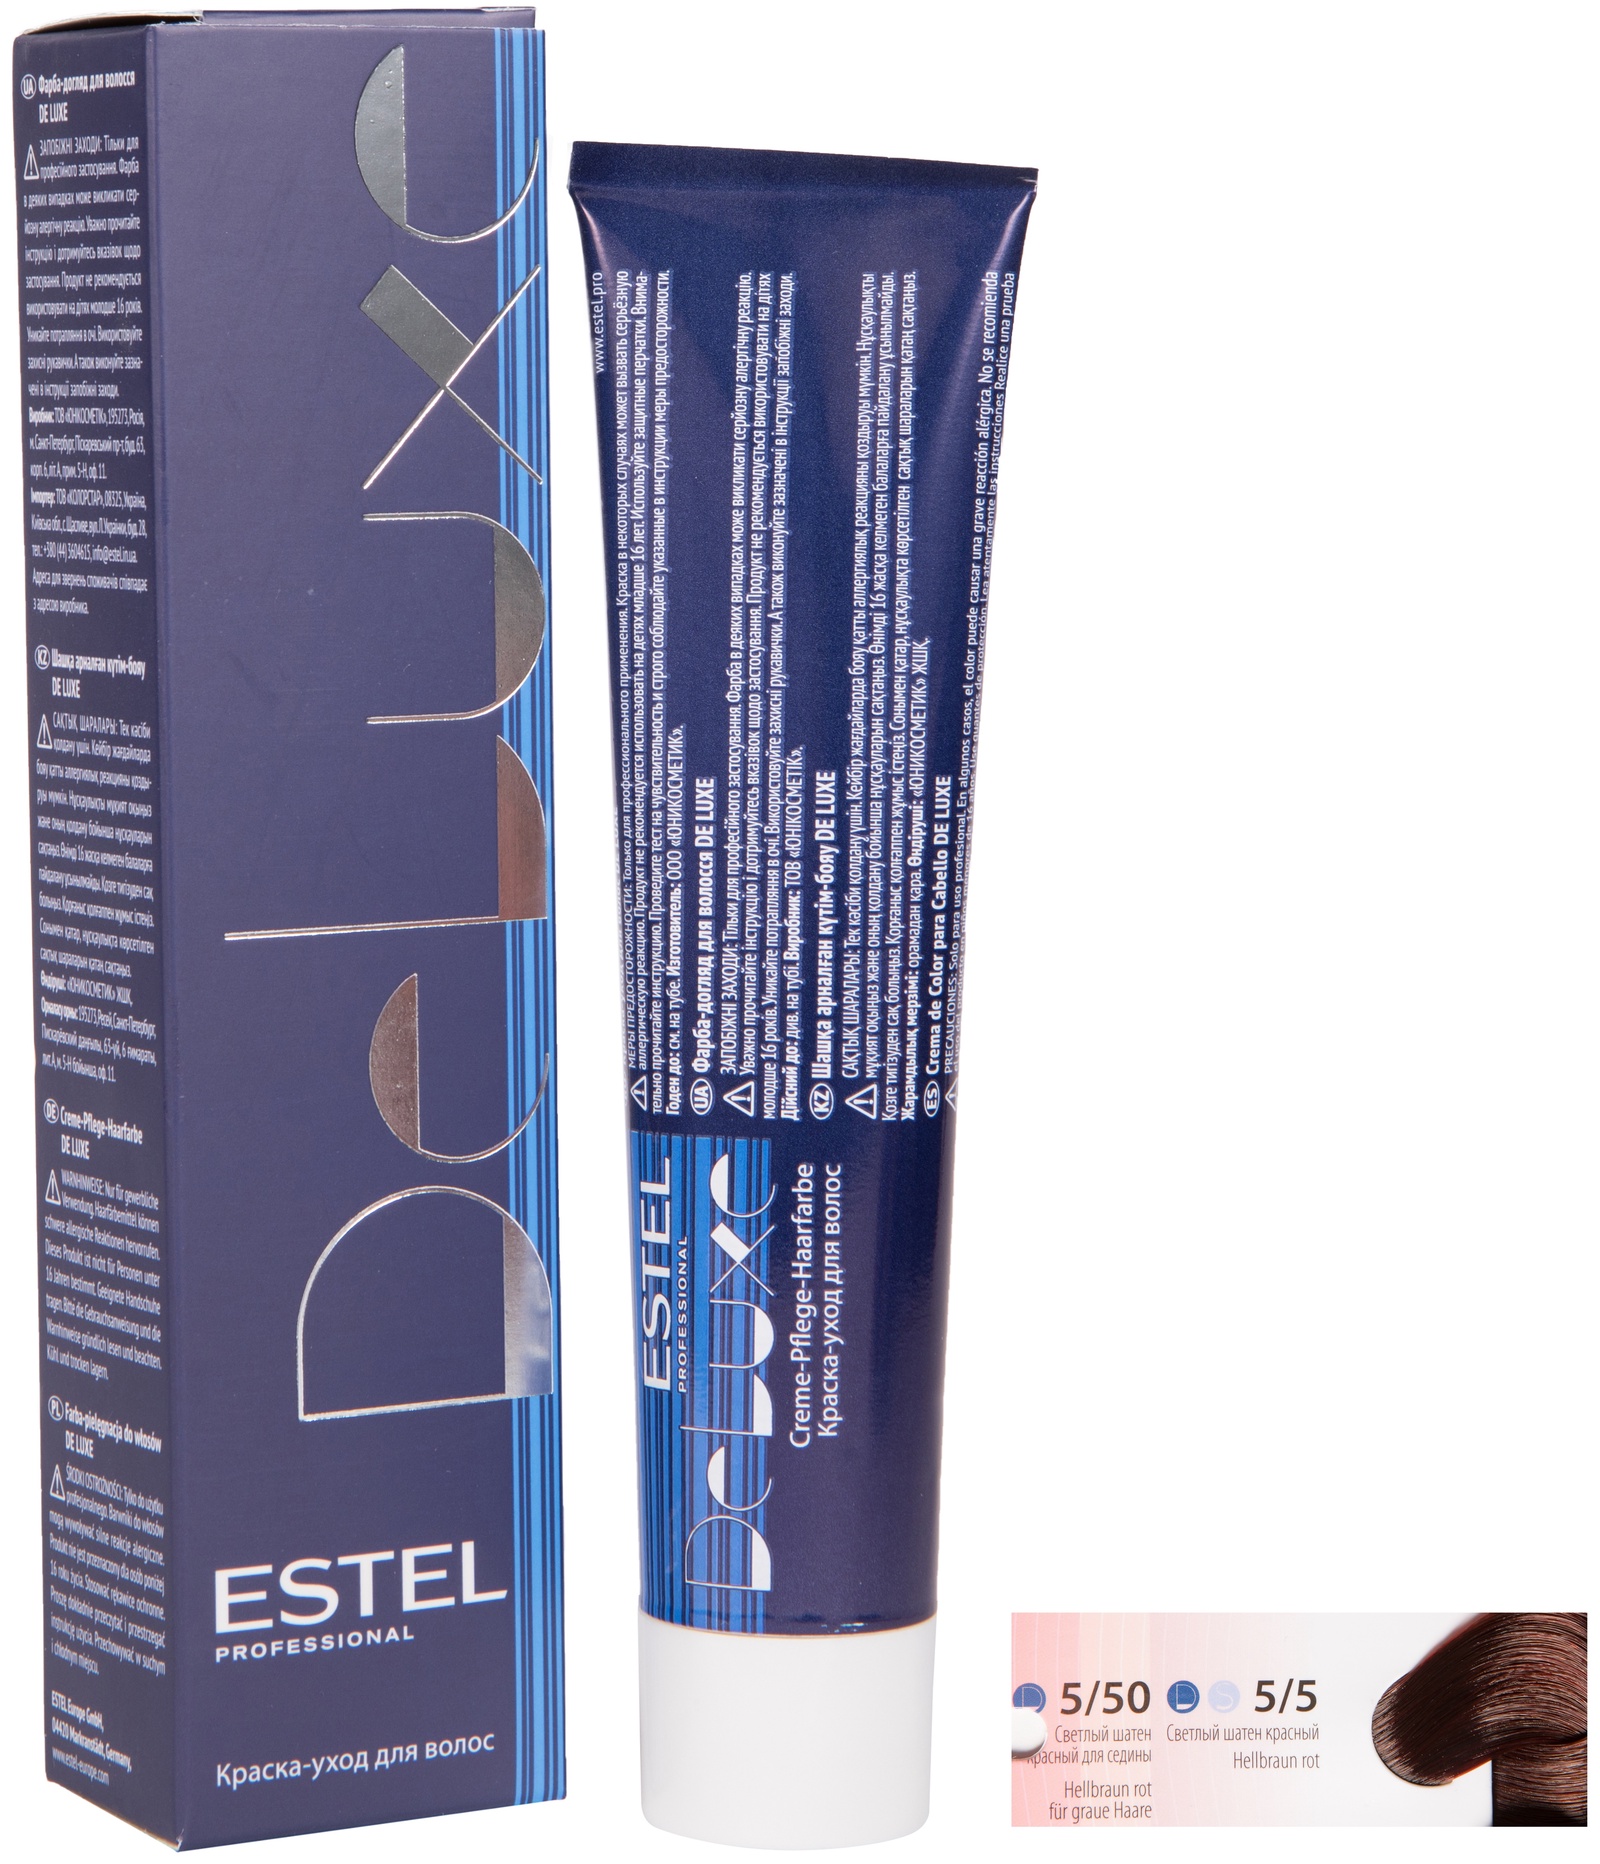 Краска для волос ESTEL PROFESSIONAL 5/50 DE LUXE краска-уход для окрашивания волос, светлый шатен красный для седины 60 мл